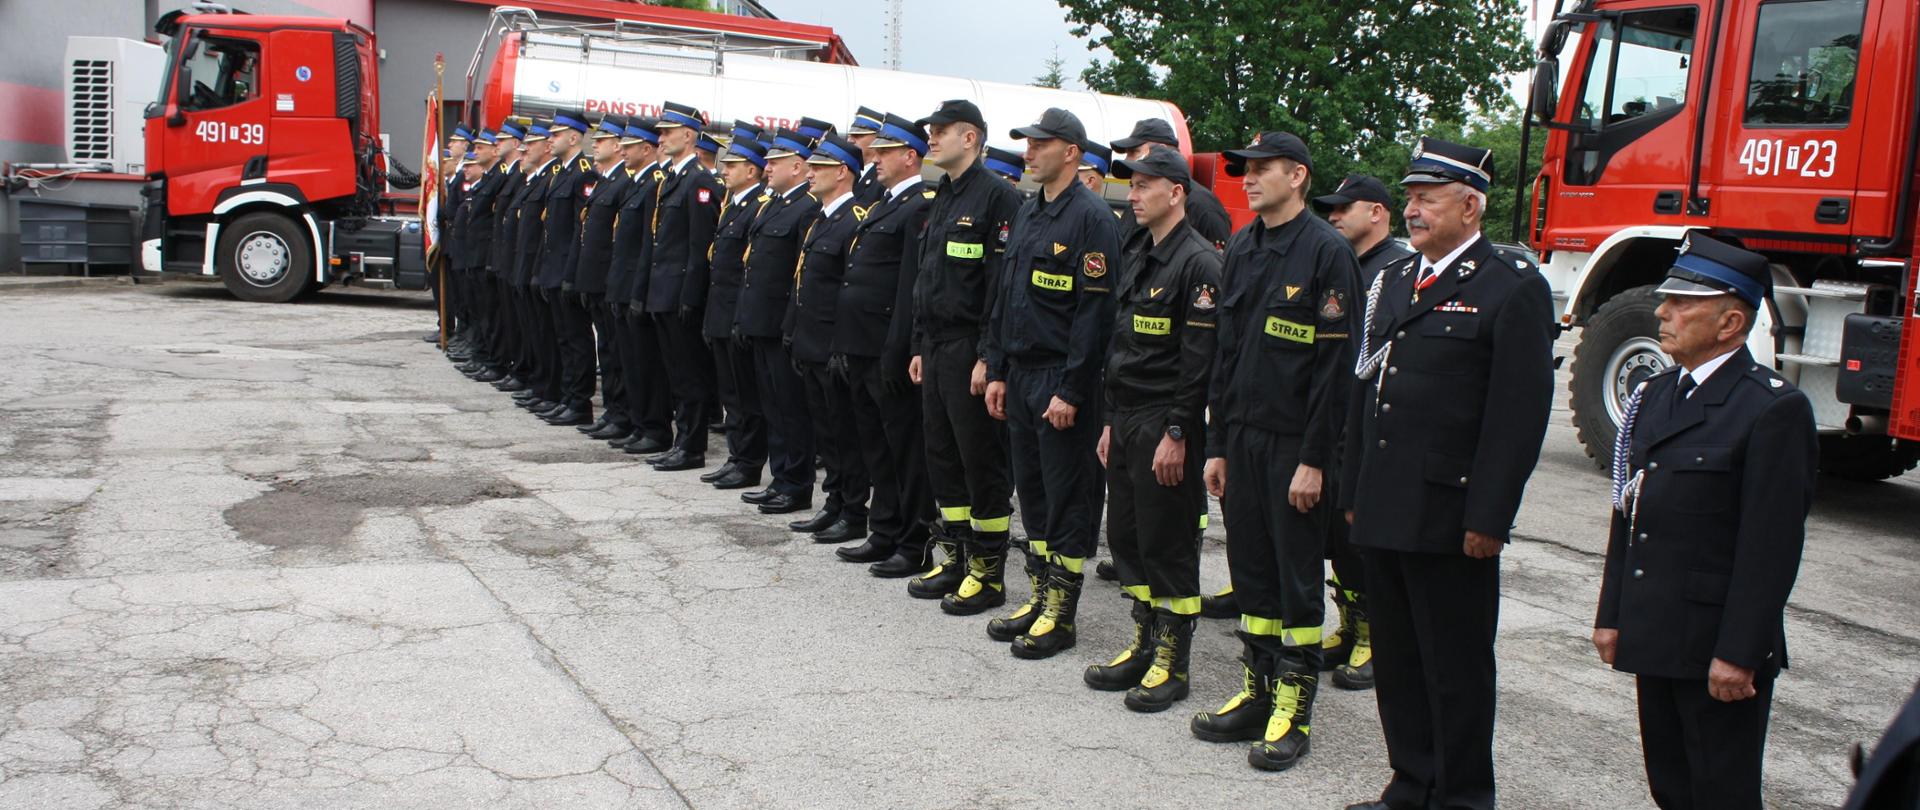 Strażacy w szyku podczas obchodów dnia strażaka